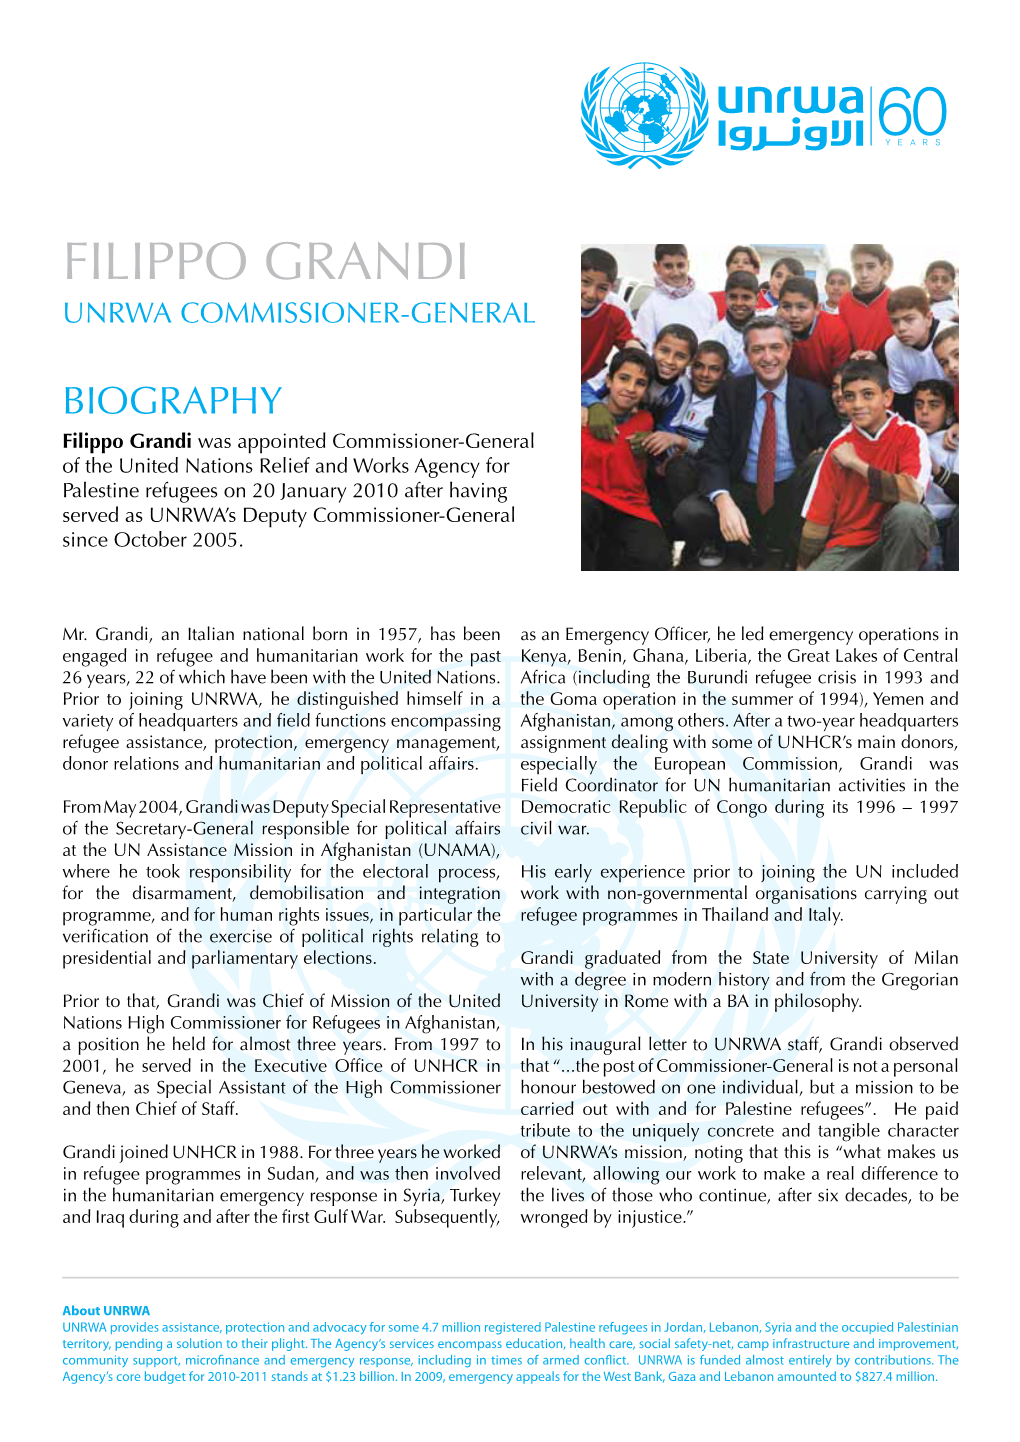 Commissioner-General Filippo Grandi Biography